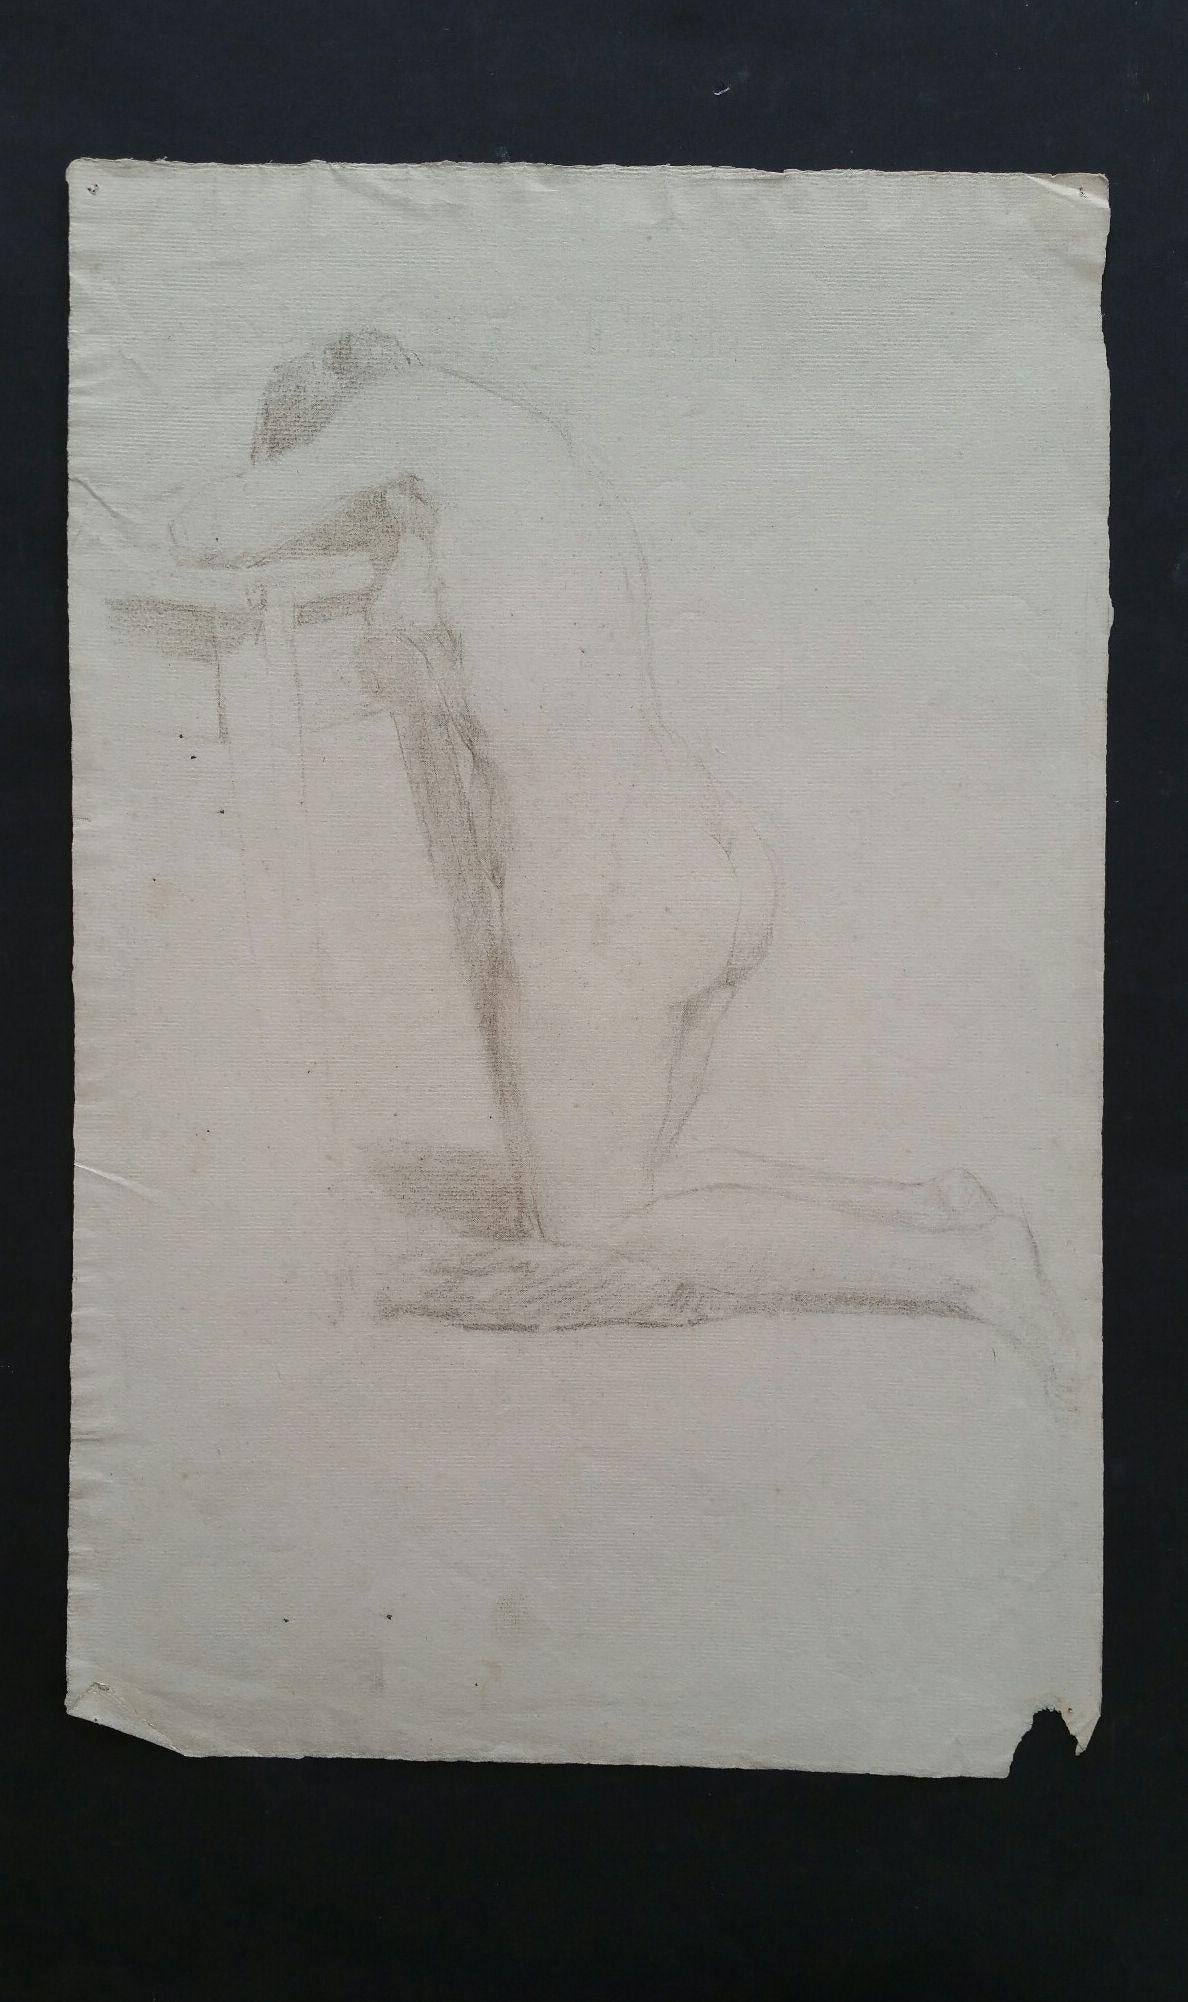 Esquisse au graphite d'une femme nue, agenouillée, en anglais
par Henry George Moon (britannique, 1857-1905)
sur papier d'artiste blanc cassé, non encadré
mesures : feuille 18.75 x 12 pouces 

provenance : de la succession de